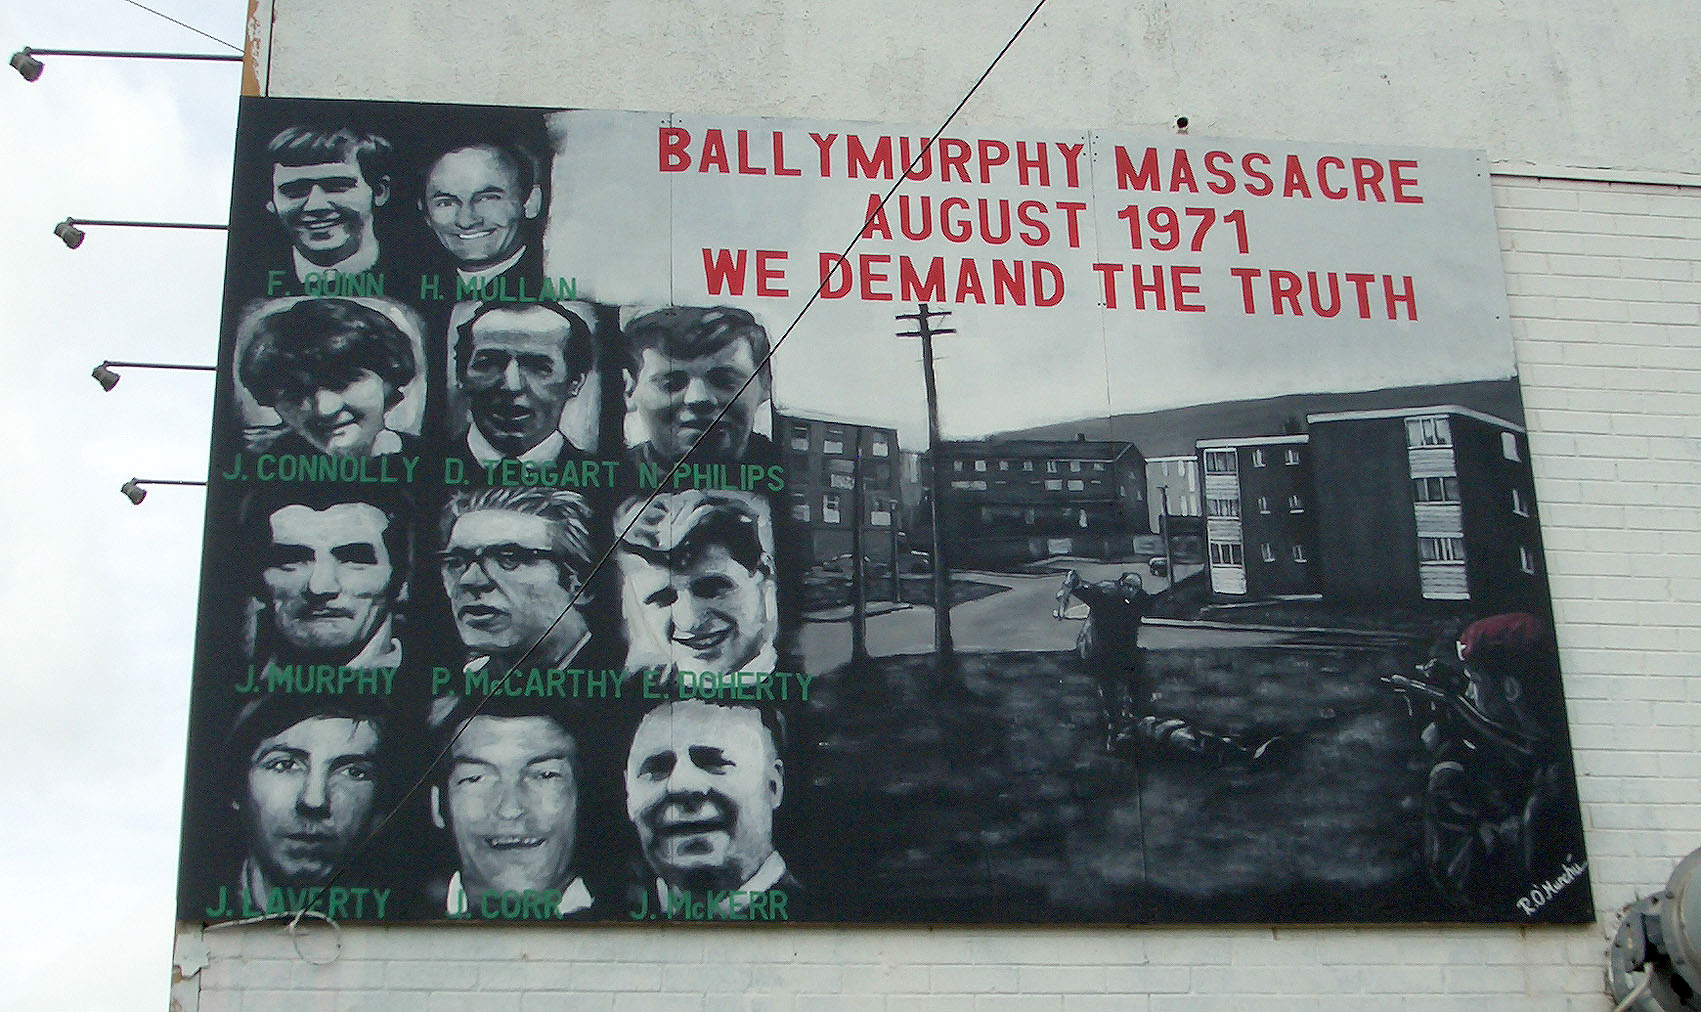 Η συγγνώμη του Μπόρις Τζόνσον για την "σφαγή του Μπαλιμέρφι" το 1971